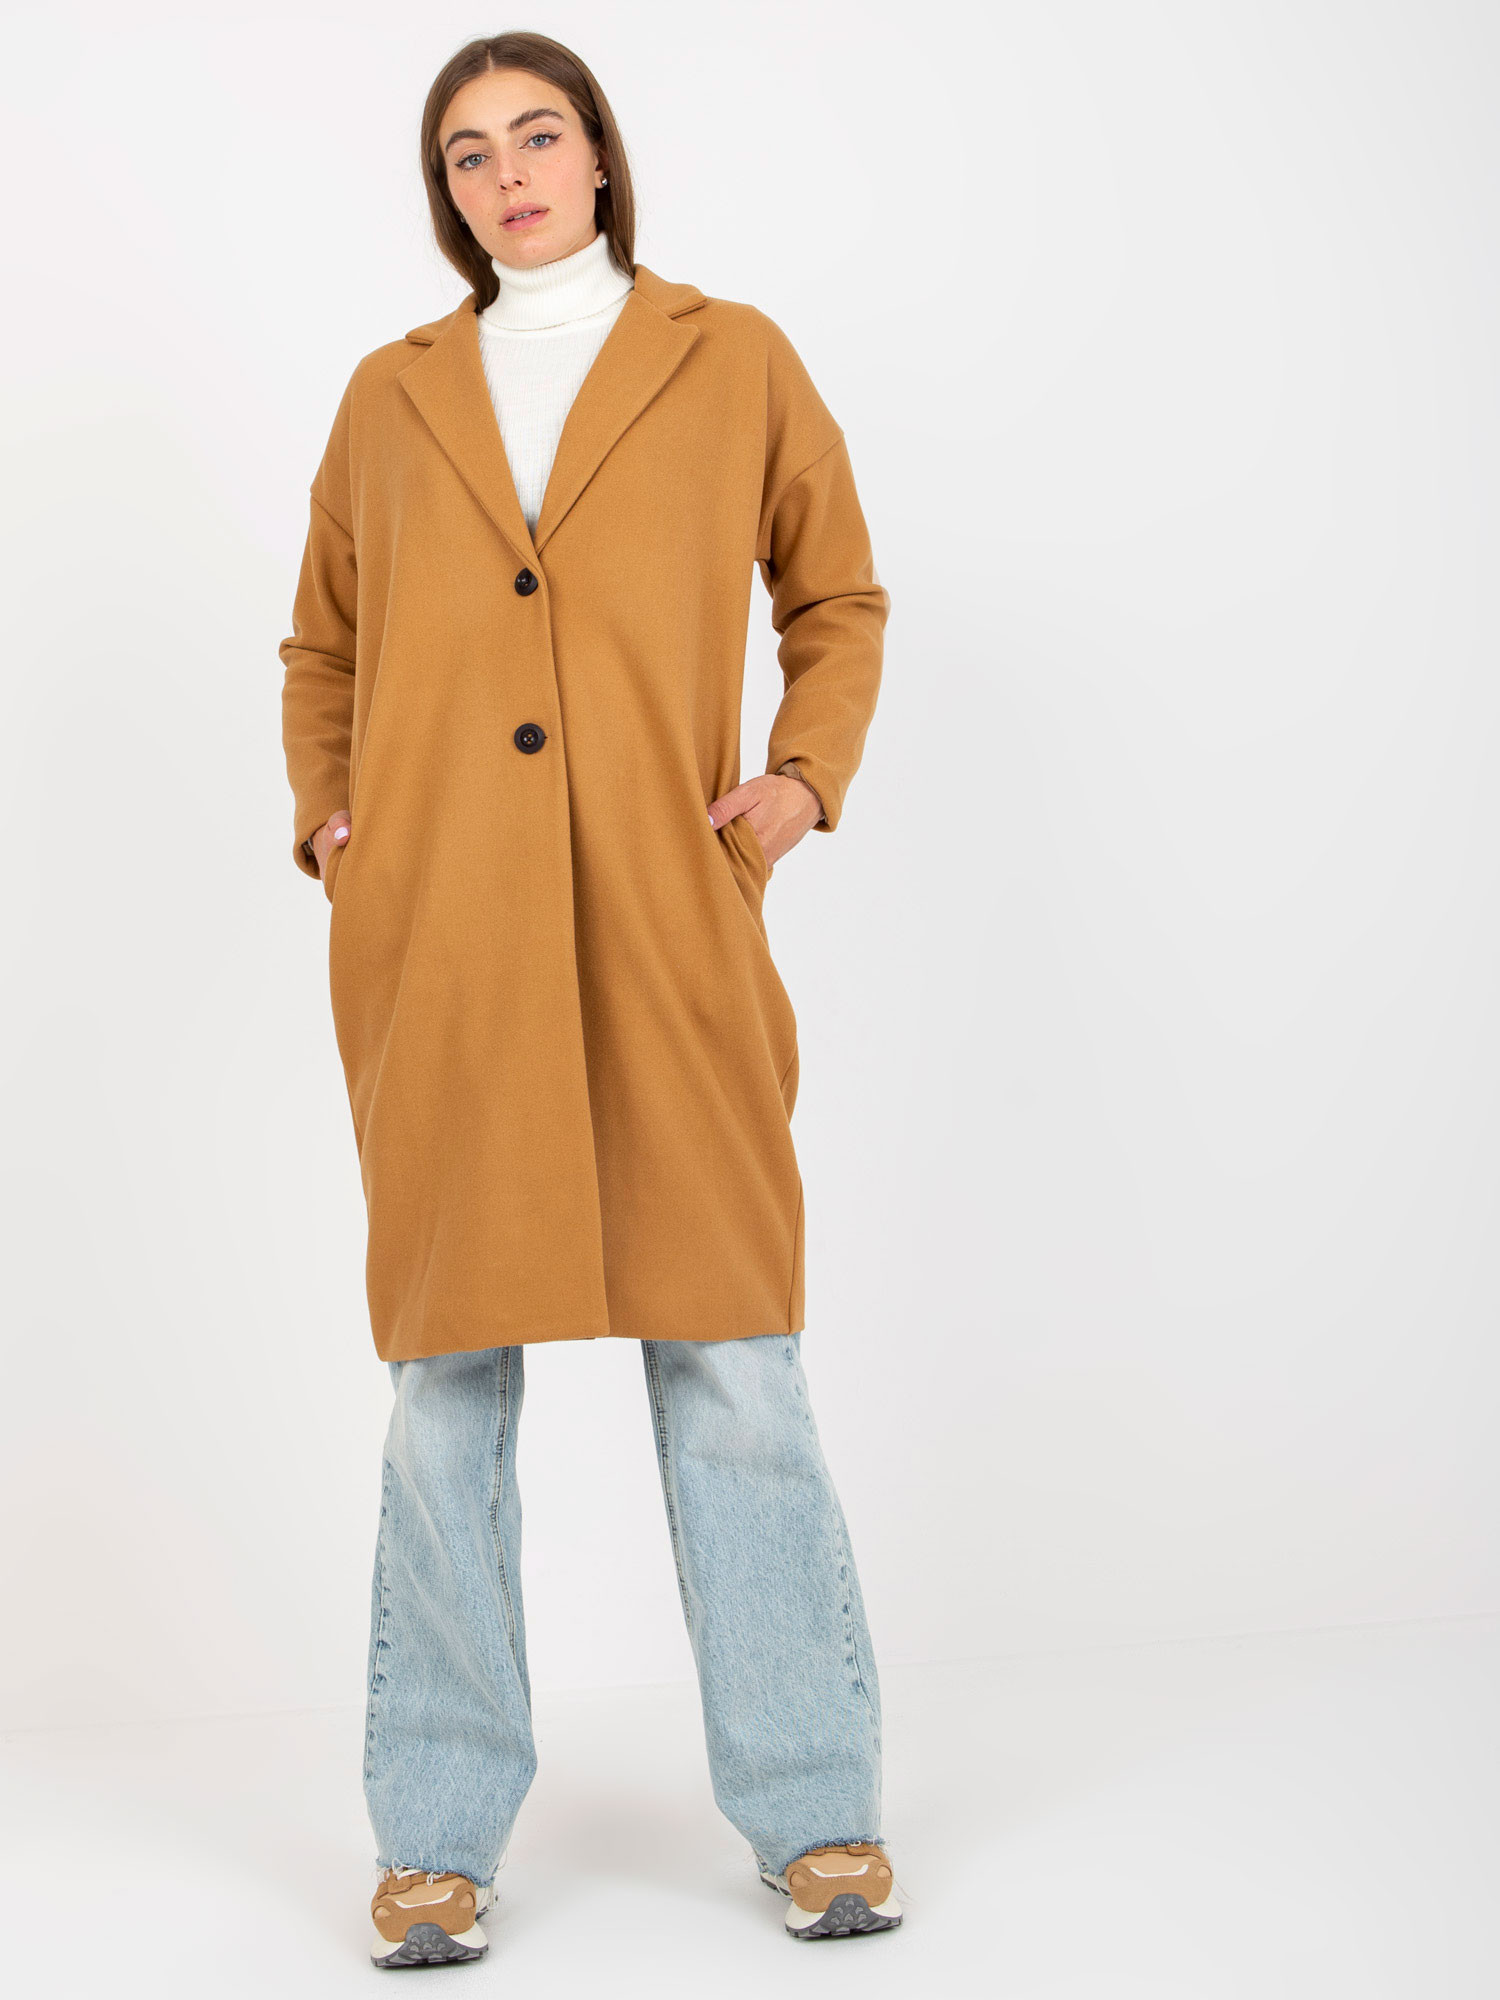 Dámský kabát TW EN BI 7298 1.15 velbloudí jedna velikost